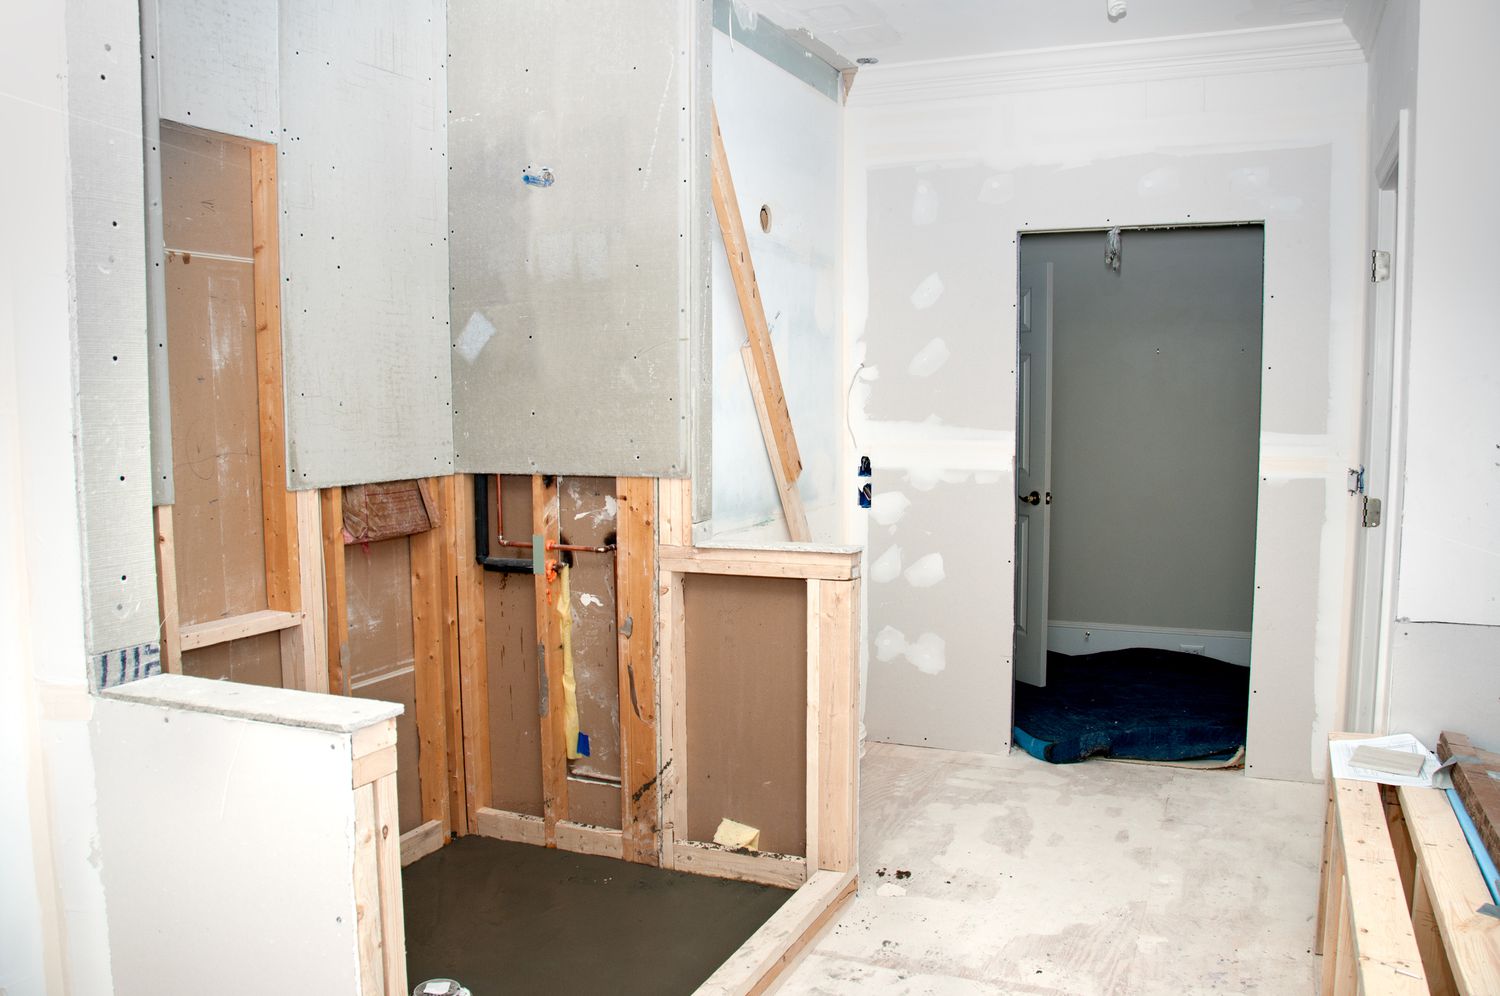 Trockenbauwand und Ständerwerk in einem renovierten Badezimmer